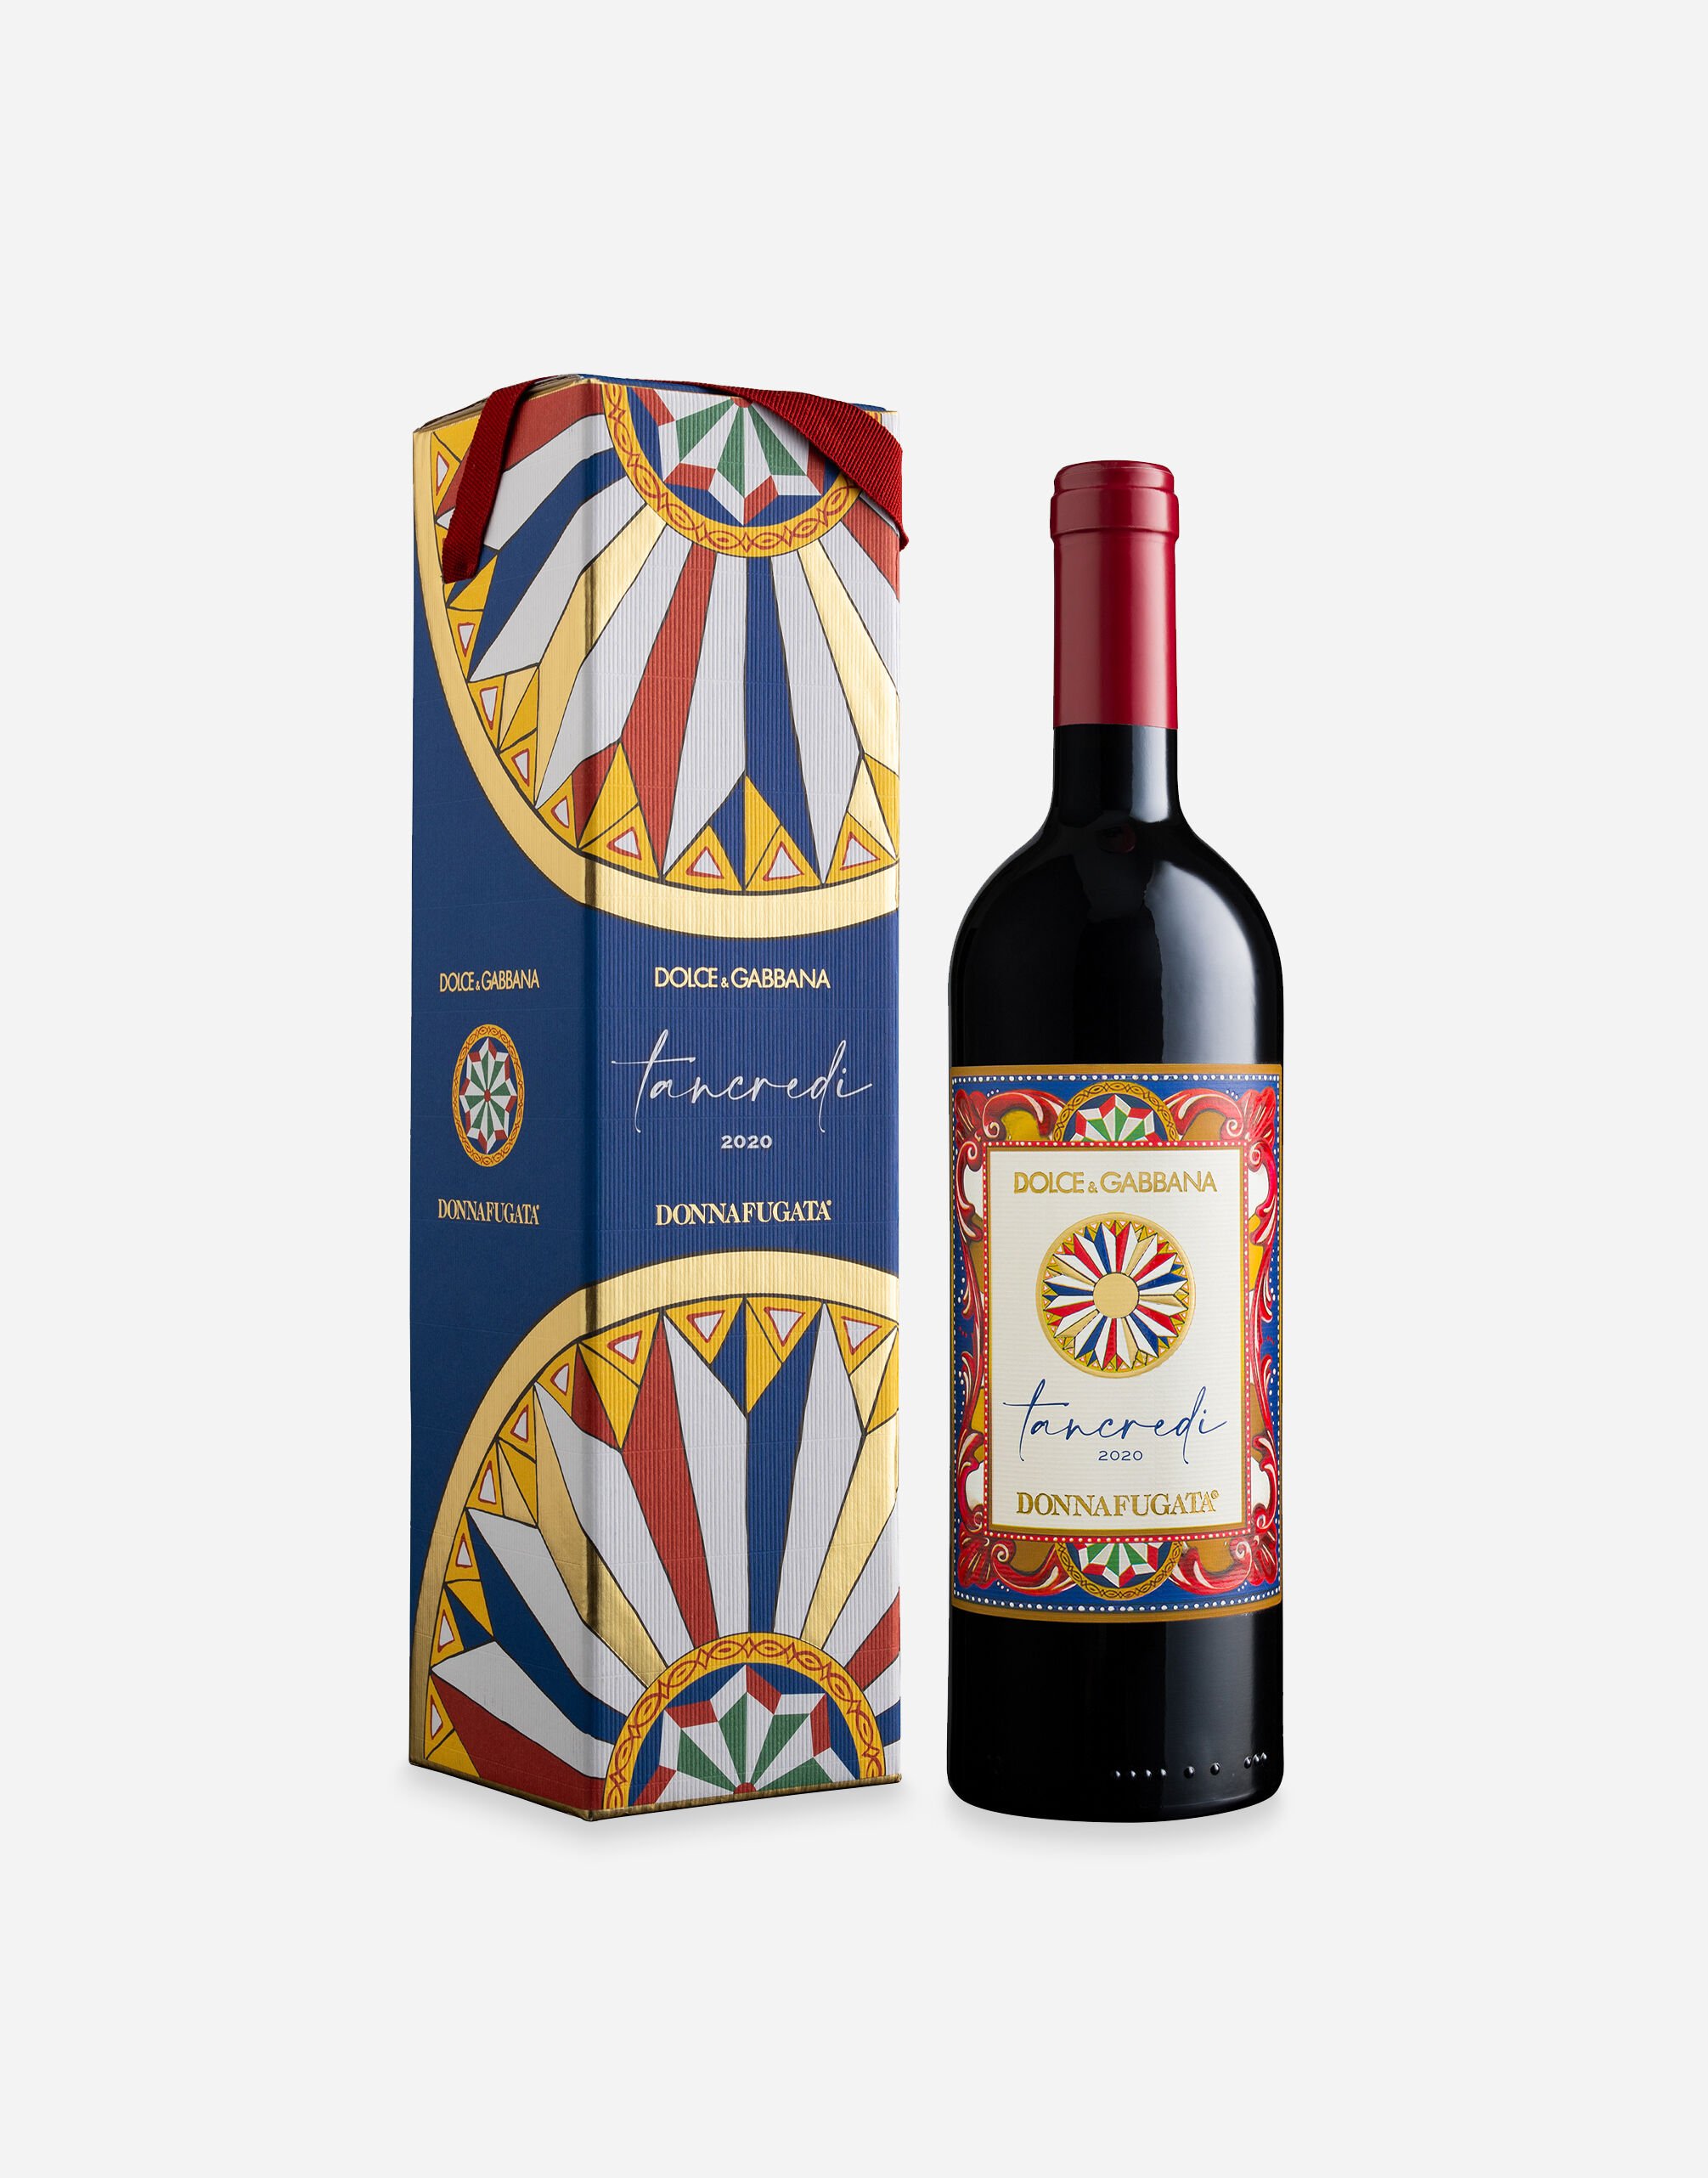 Dolce & Gabbana TANCREDI 2020 - Terre Siciliane IGT Tinto (0,75 l) Caja con una unidad Multicolor PW0221RES75